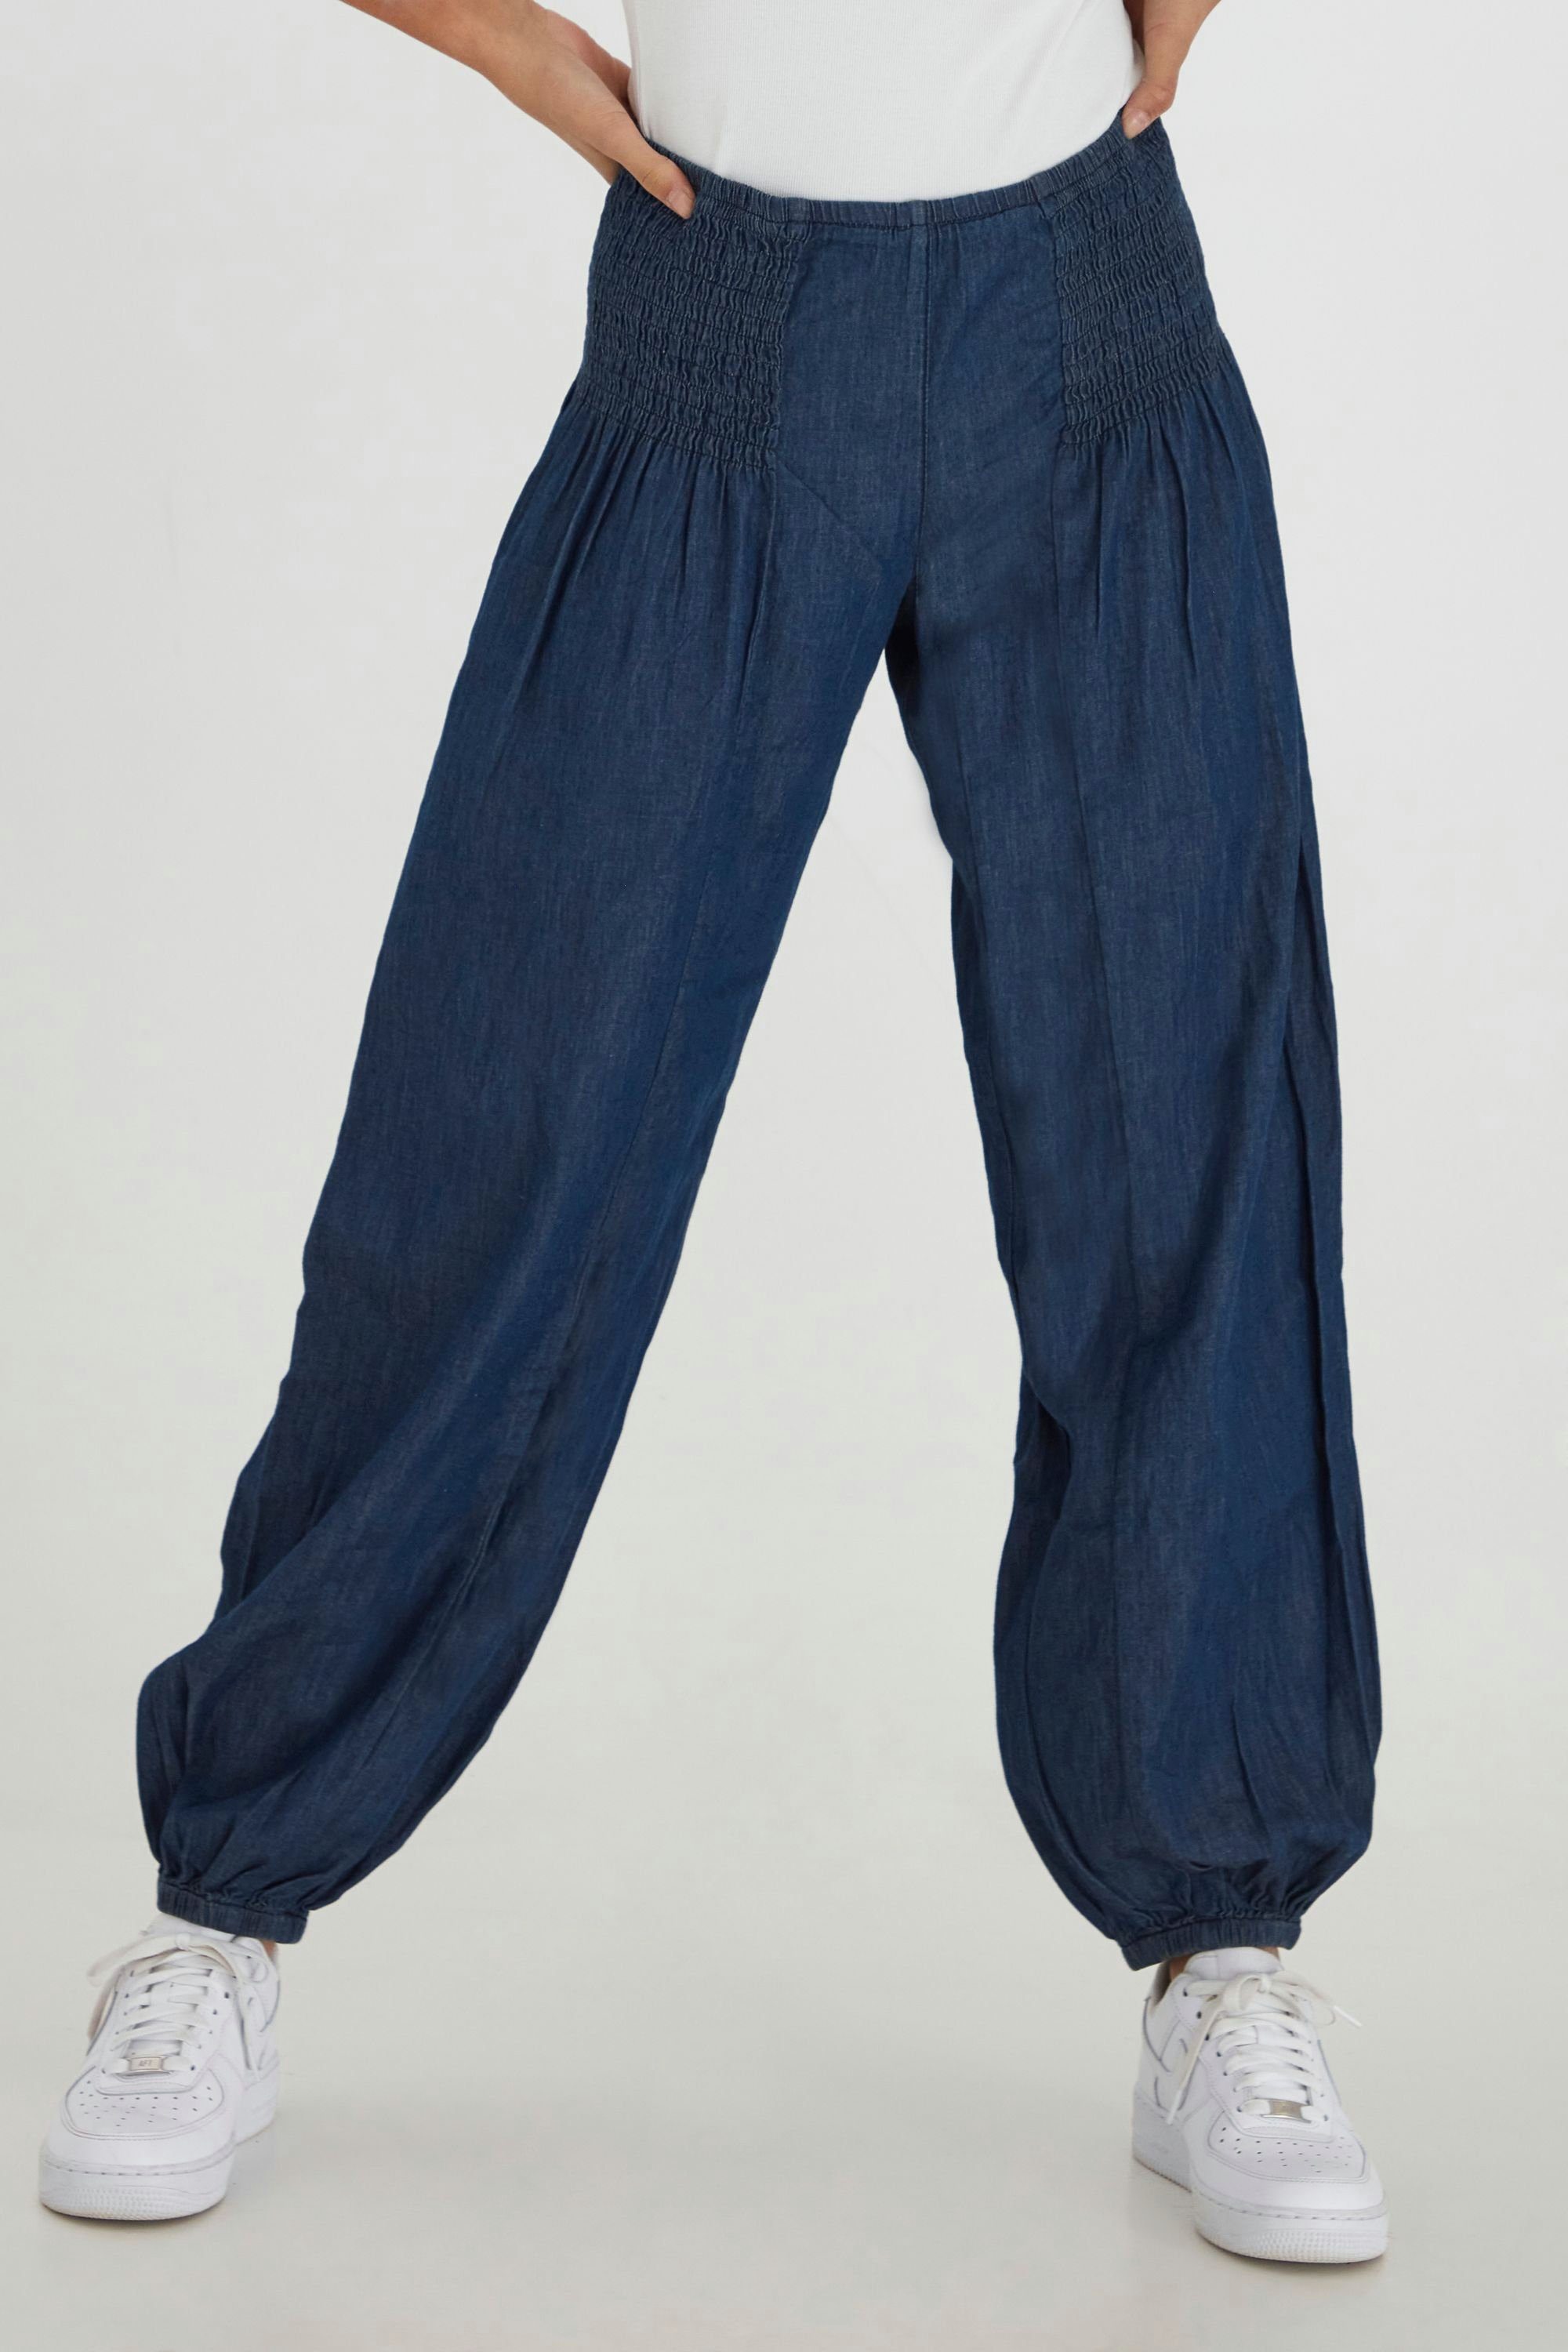 Pulz Jeans Schlupfhose PZJILL - 50200327 Weite Denim Hose mit elastischem Bund Dark blue denim (5001814)